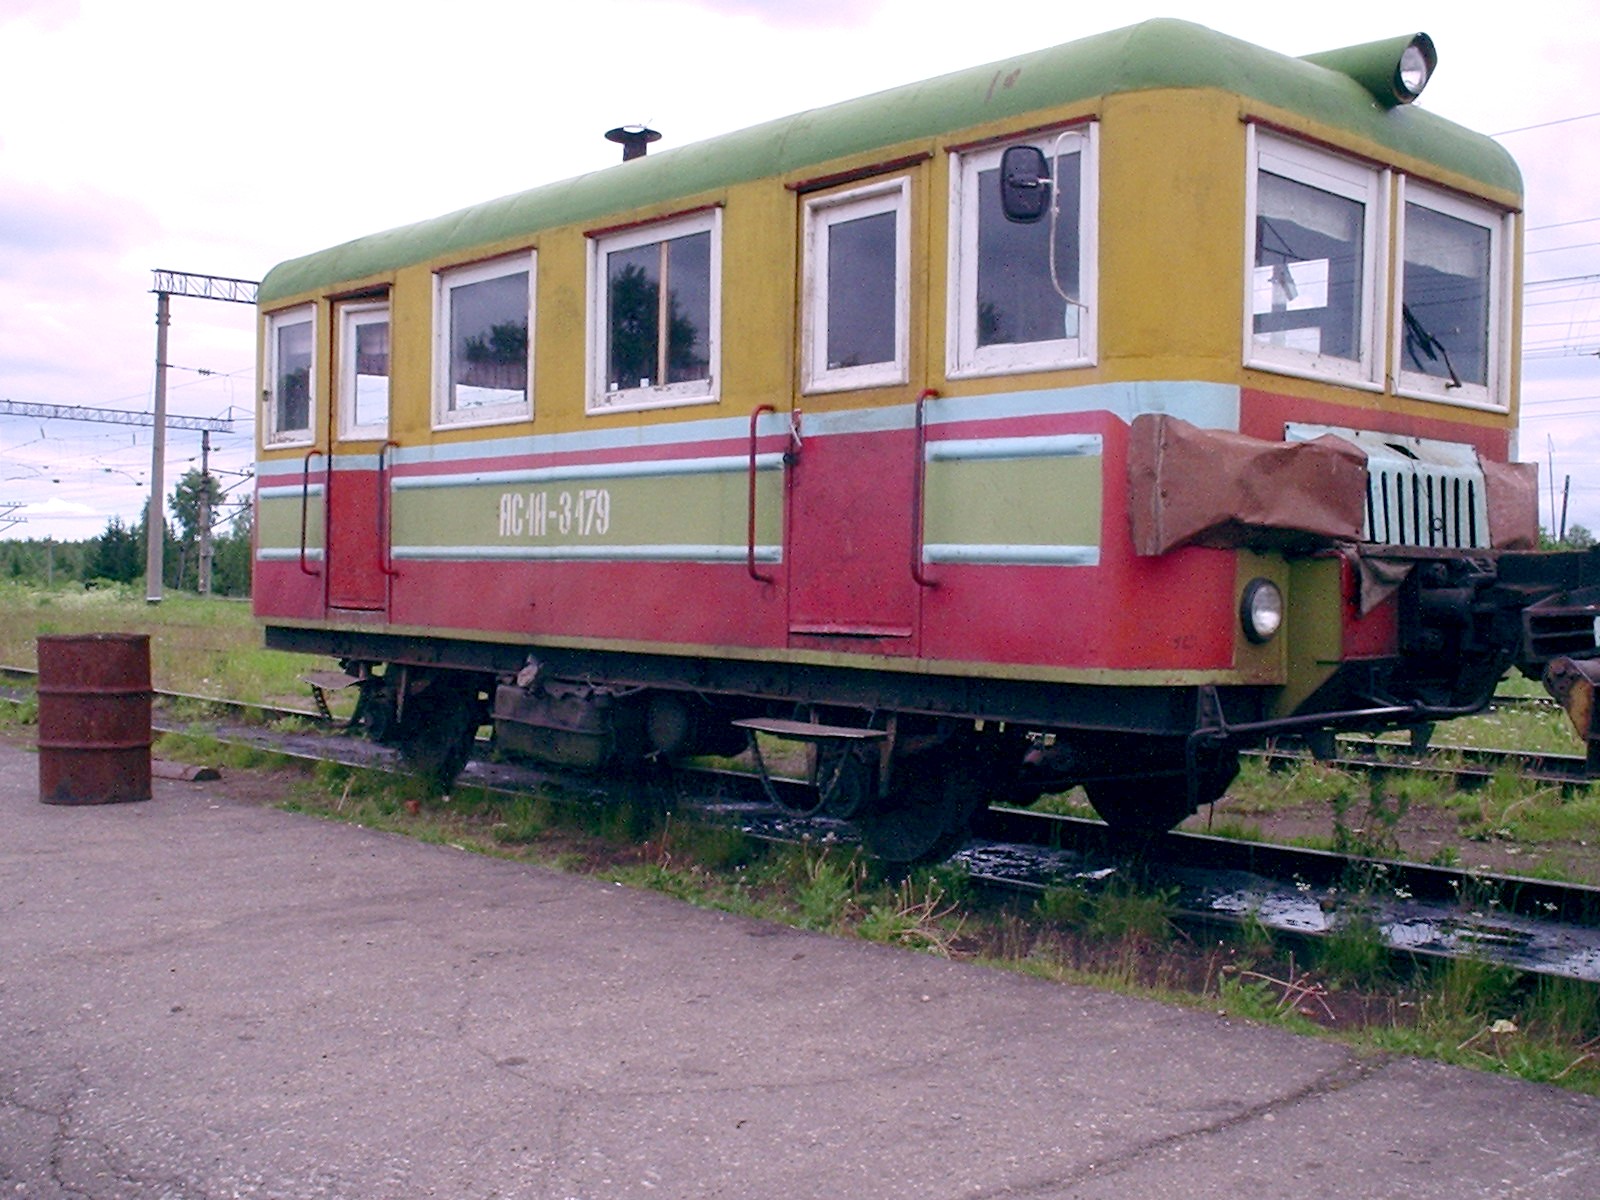 Ерцевская железная дорога  —  фотографии, сделанные в   2005  году (часть 2)